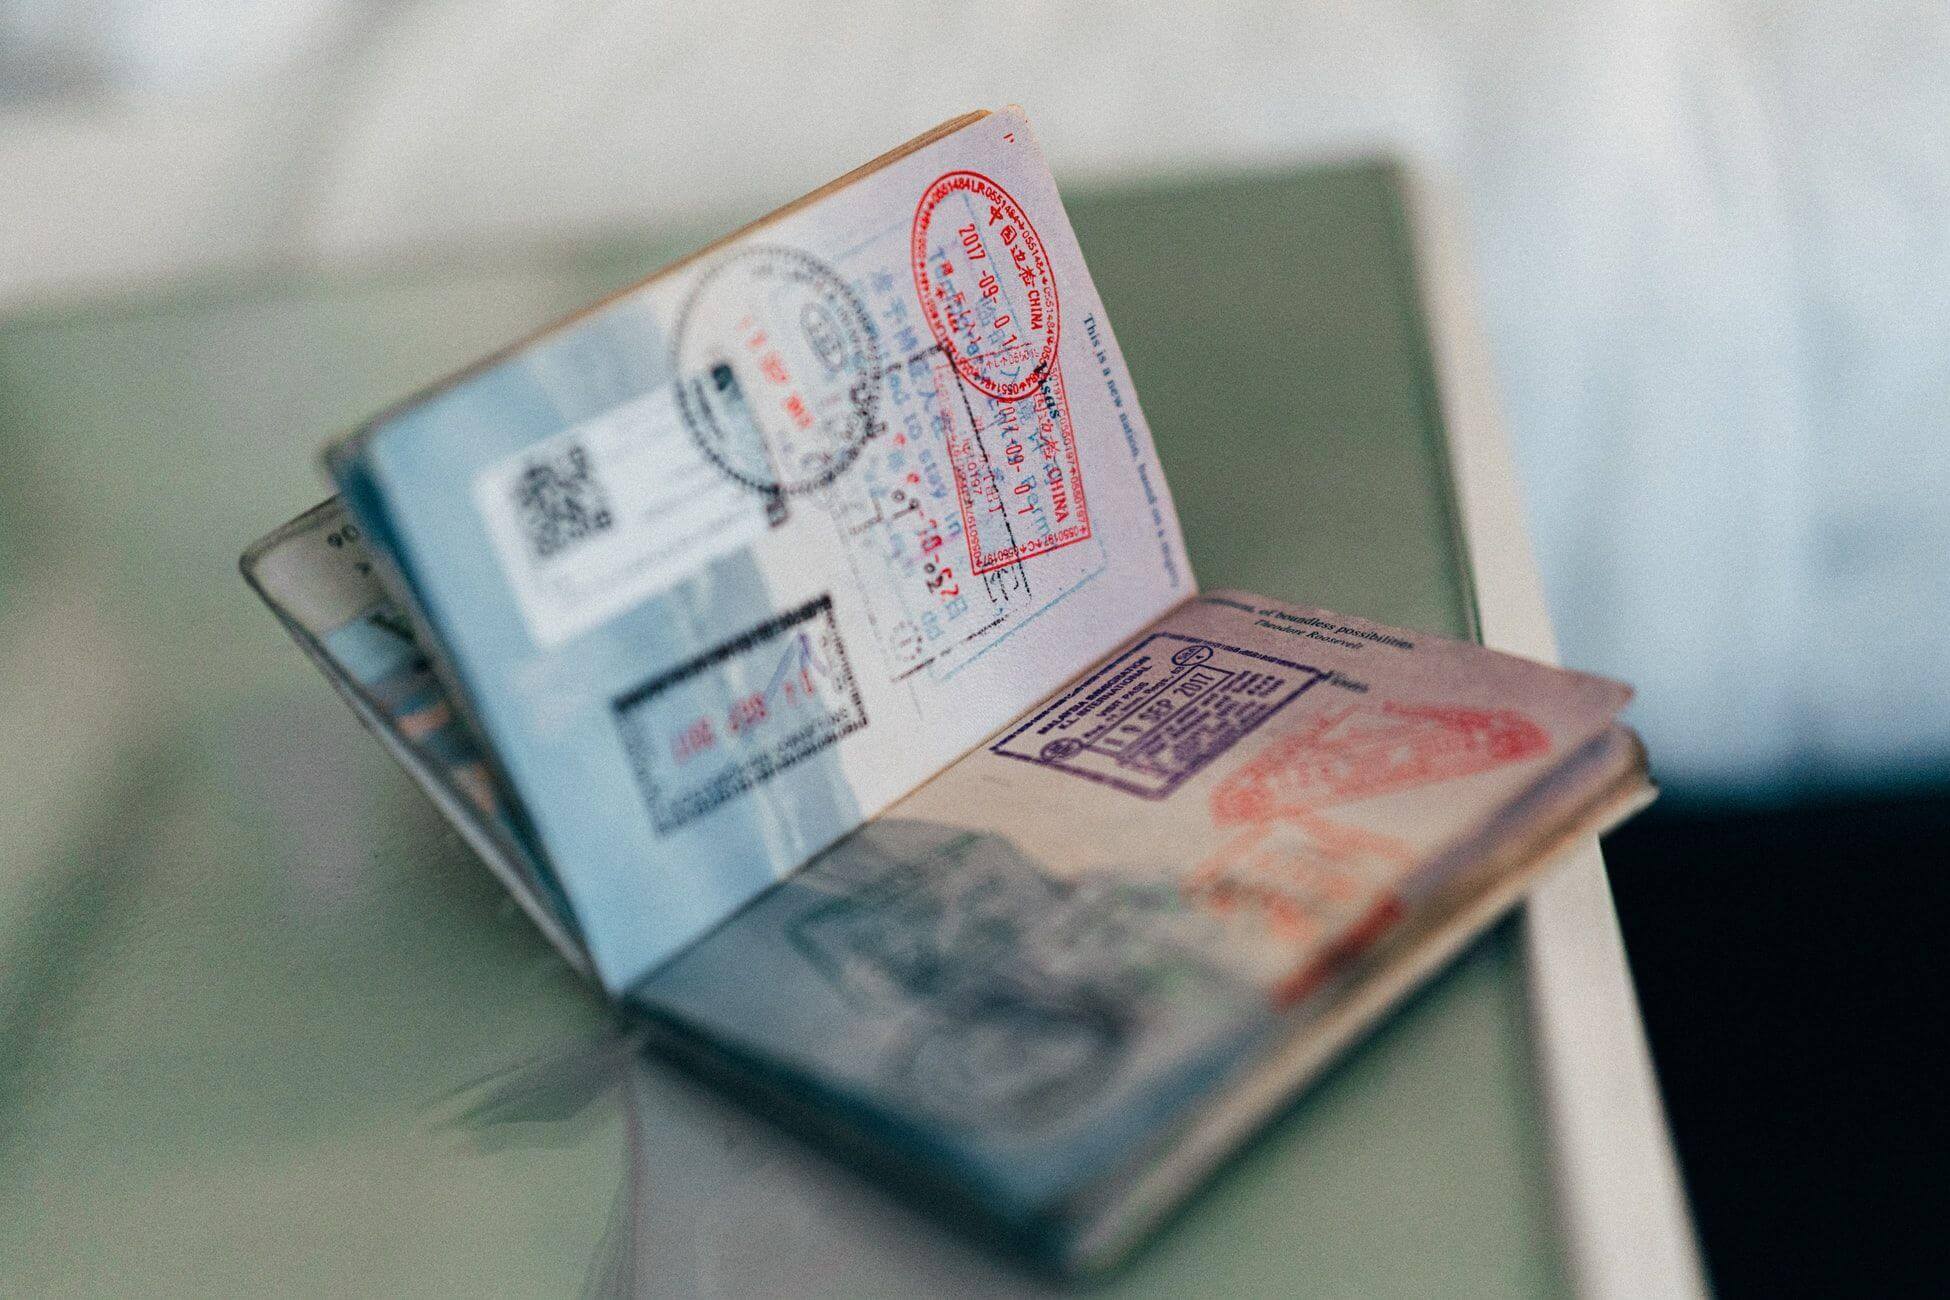 passport-stamps-1.jpg